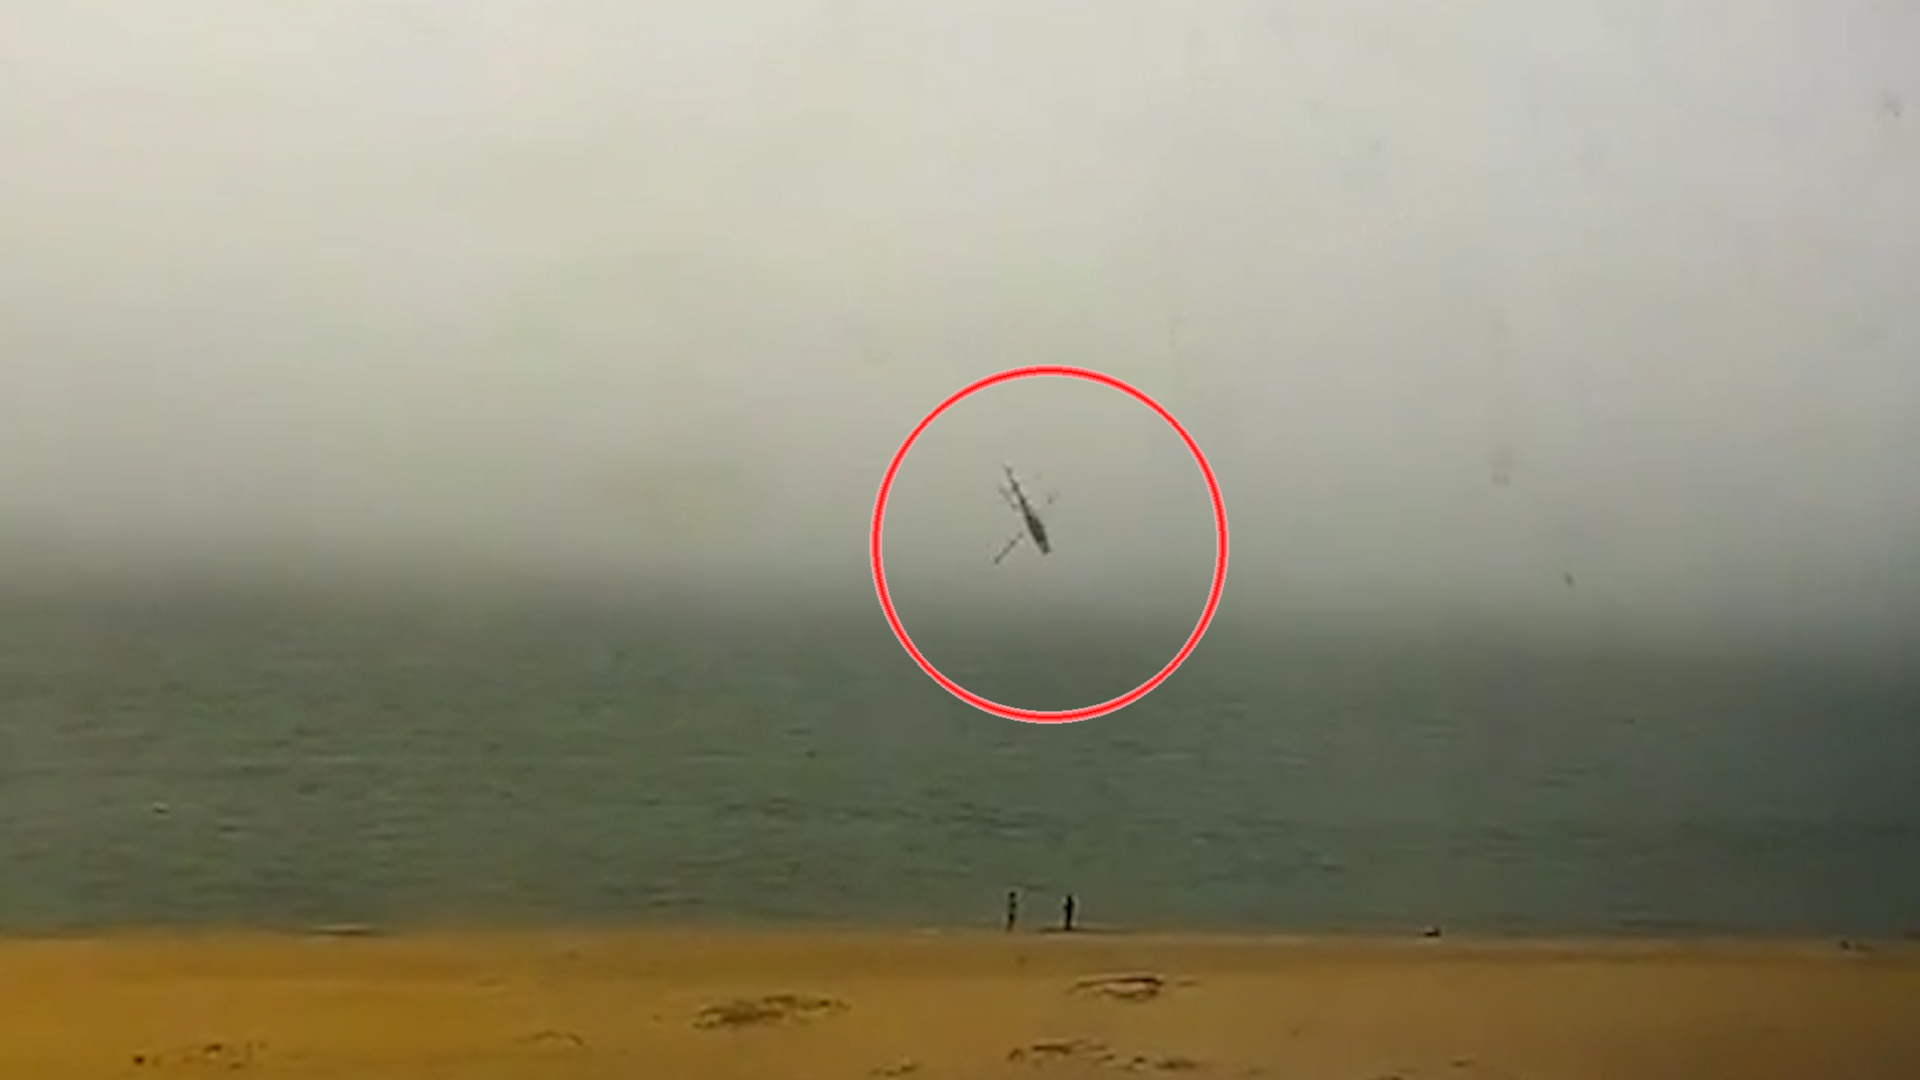 厦门观光直升机坠海致3人遇难1人失踪坠机现场画面曝光